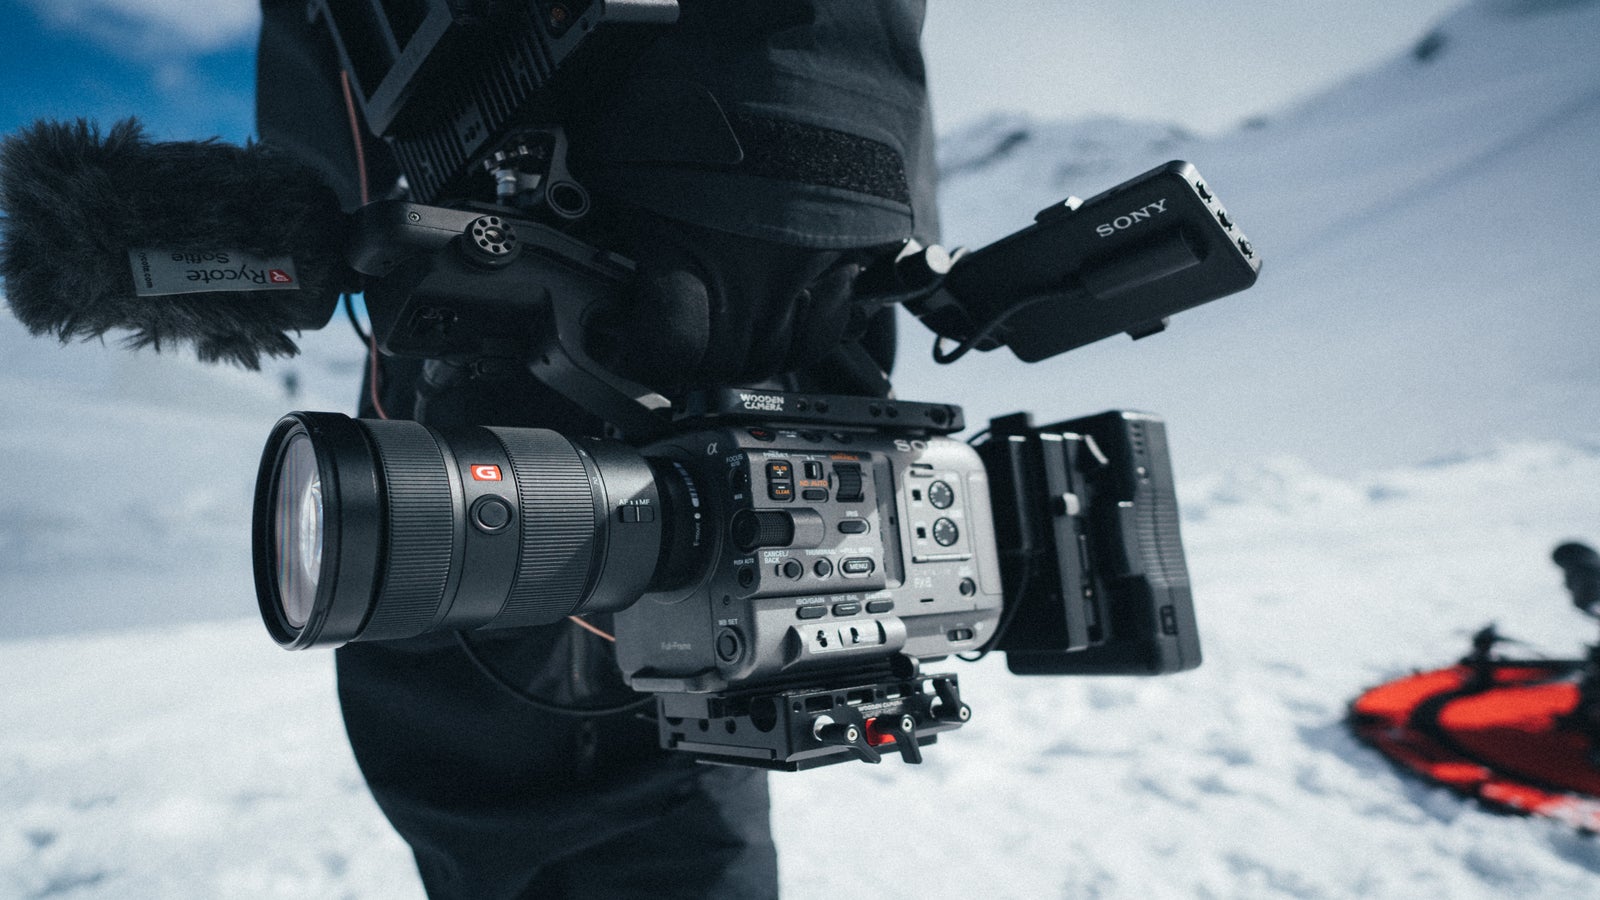 Mediakwest - BURANO, la nouvelle caméra cinéma Sony !